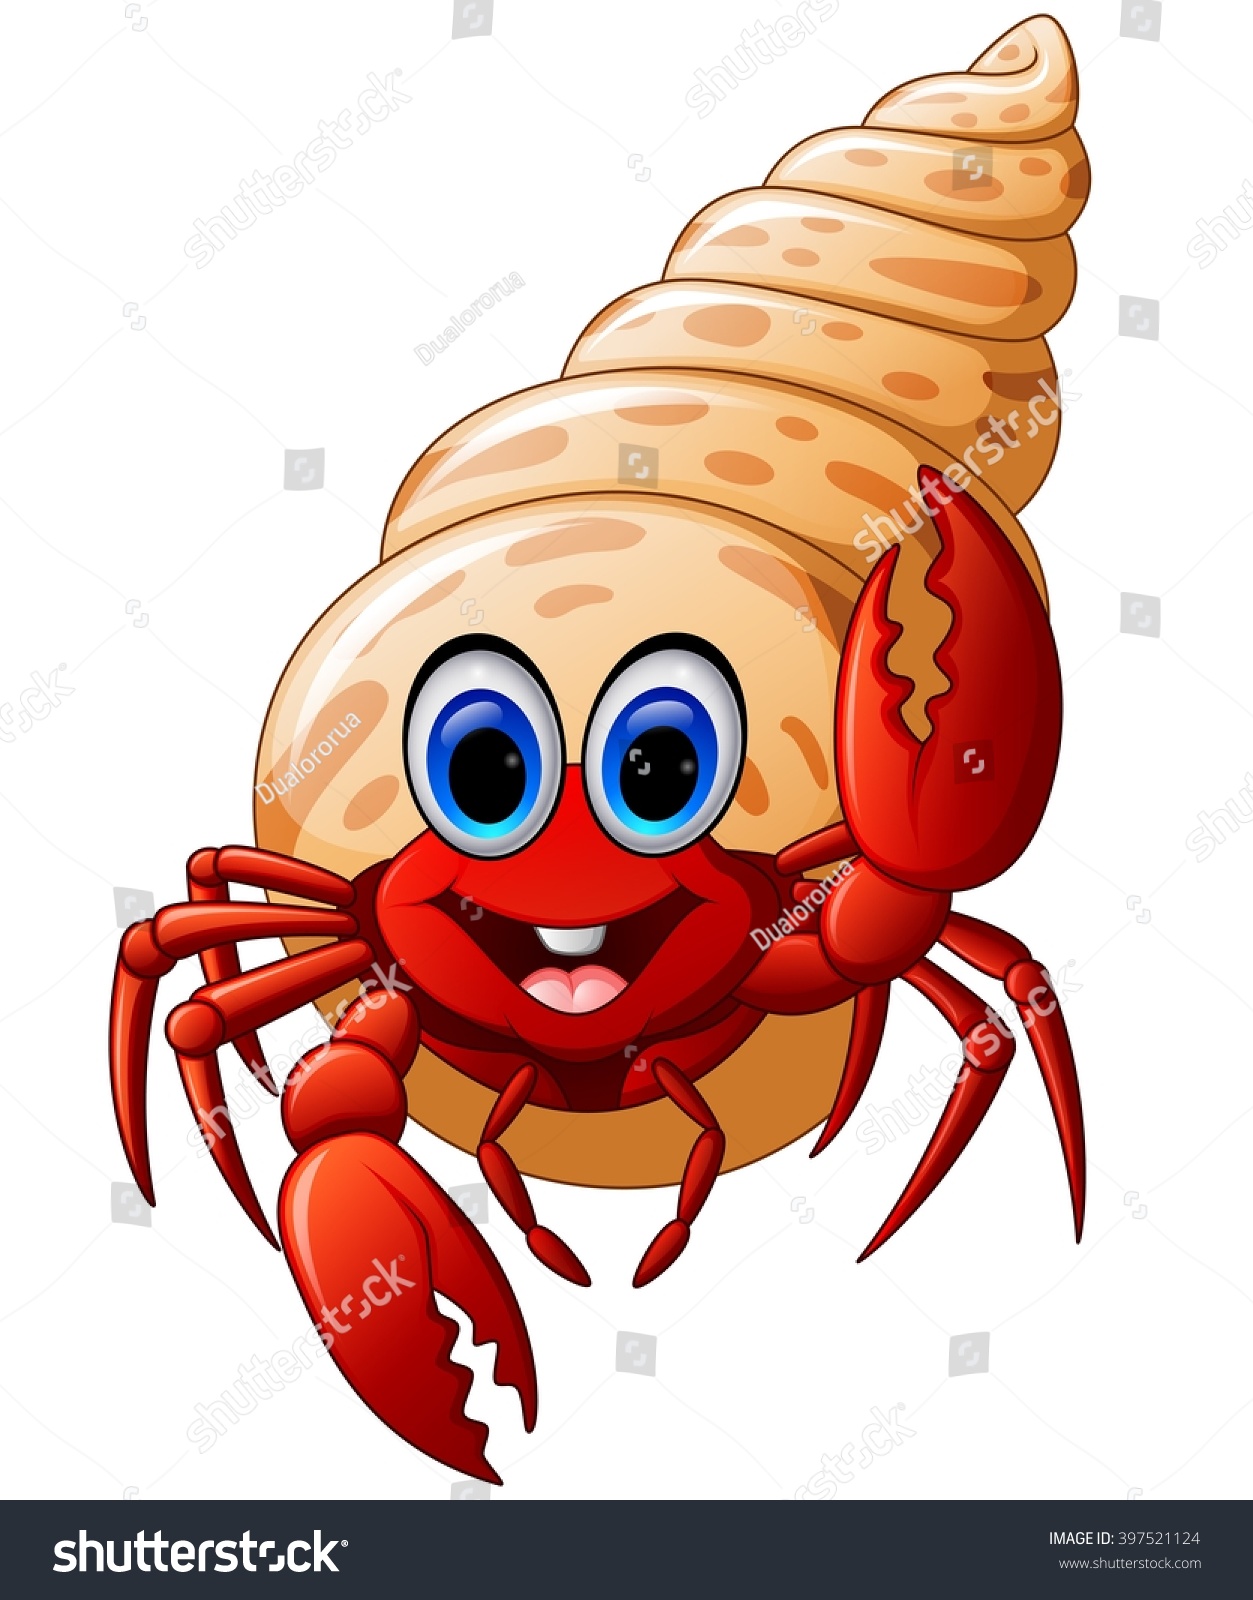 Cartoon Hermit Crab Stock Vector 397521124 - Shutterstock